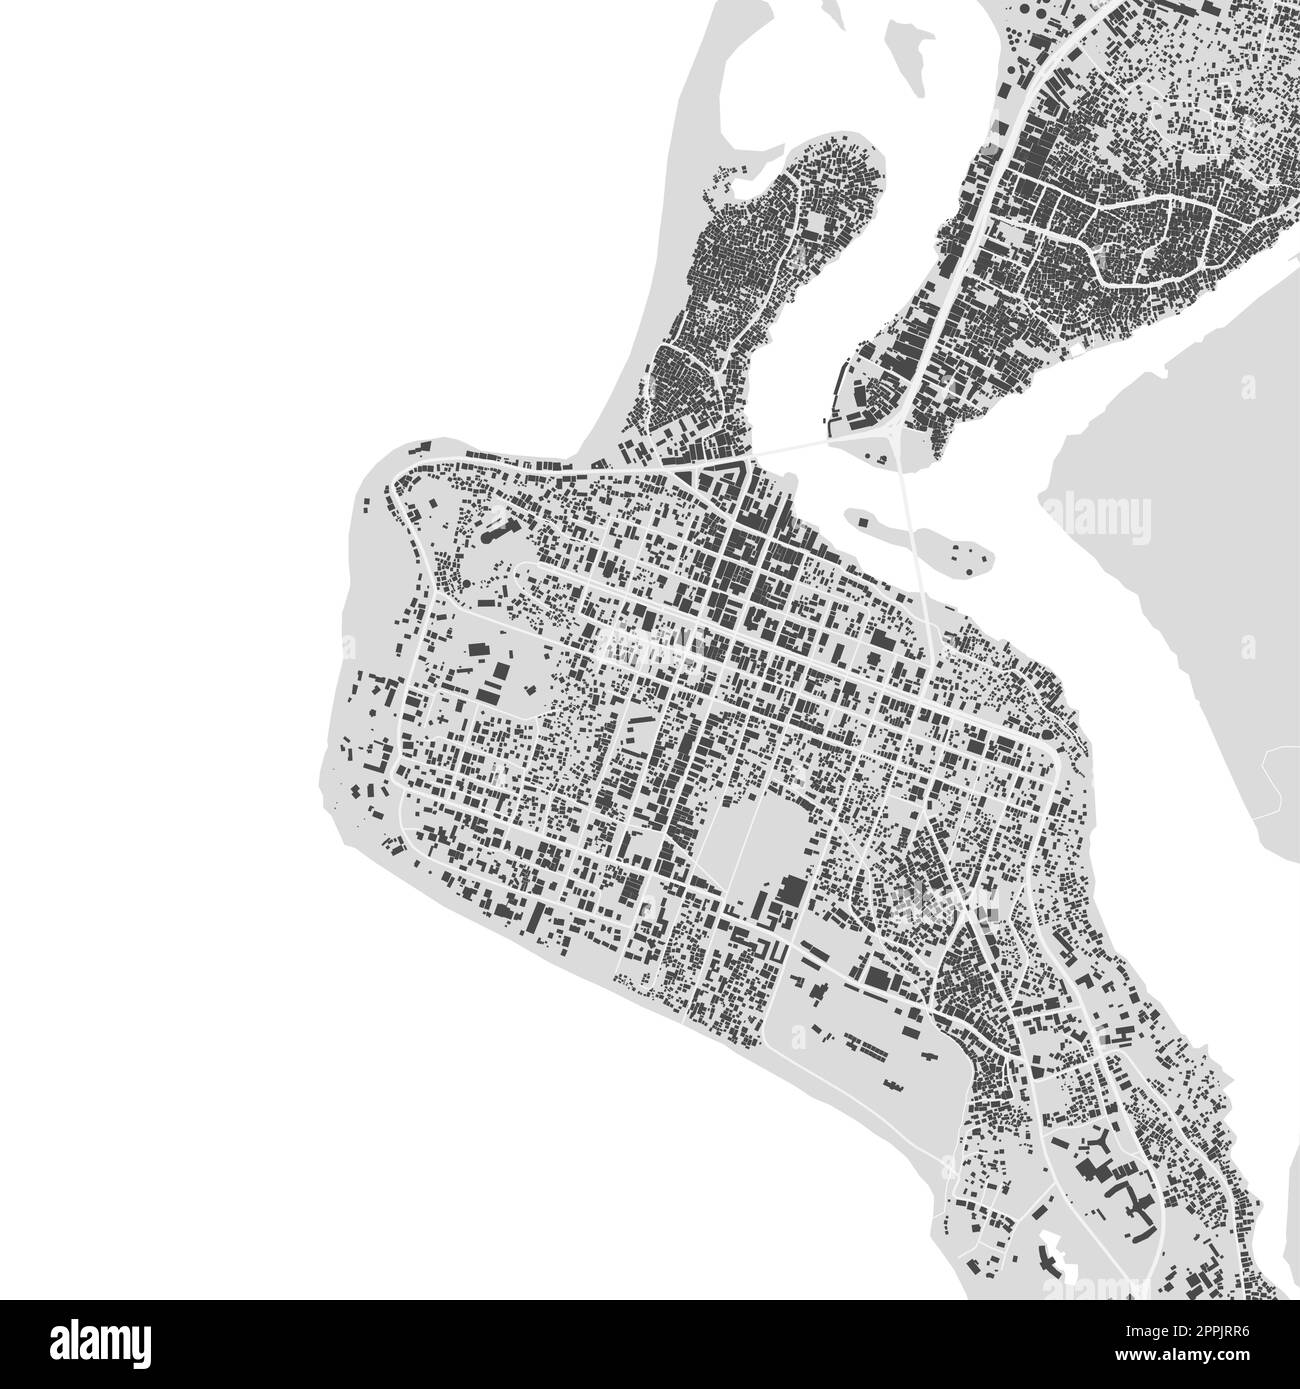 Carte vectorielle urbaine de Monrovia, Libéria. Illustration vectorielle, Monrovia carte en niveaux de gris poster en noir et blanc. Image de carte routière avec routes, métropo Illustration de Vecteur